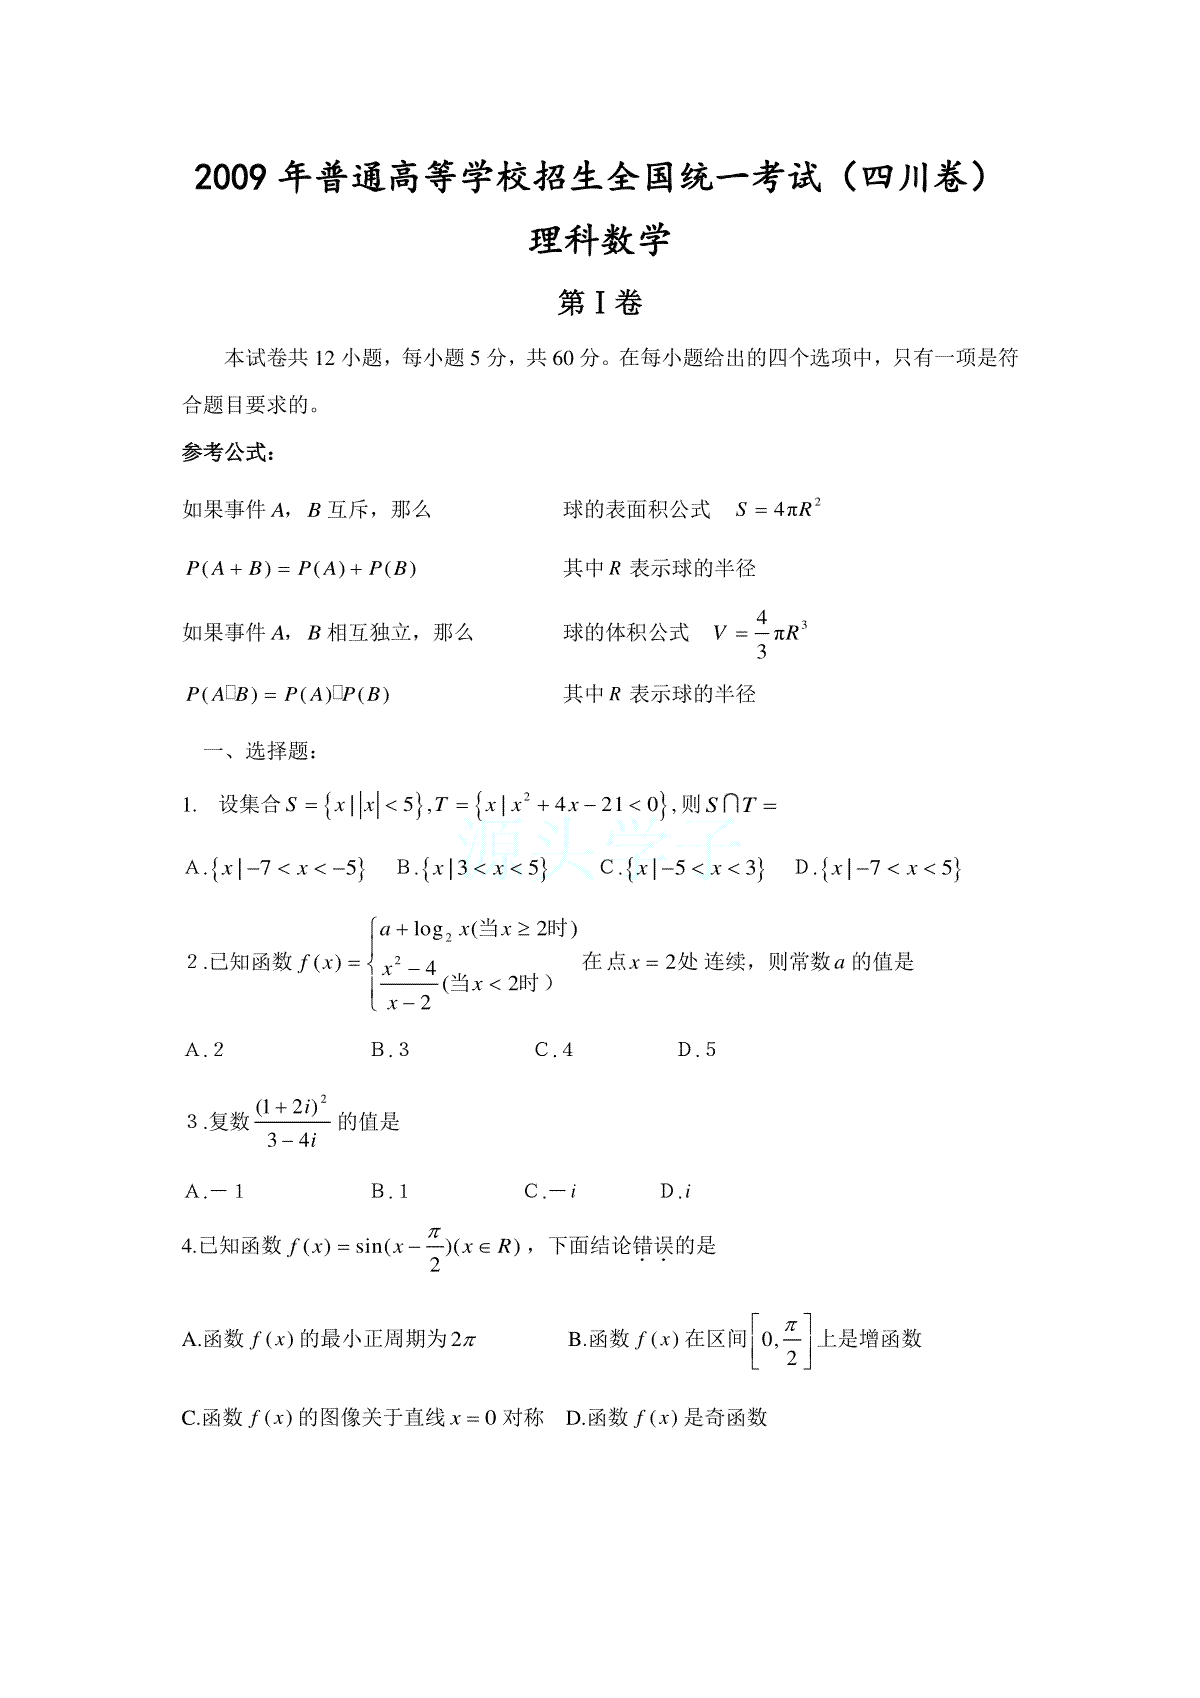 2009四川高考数学(理科)试题及参考答案